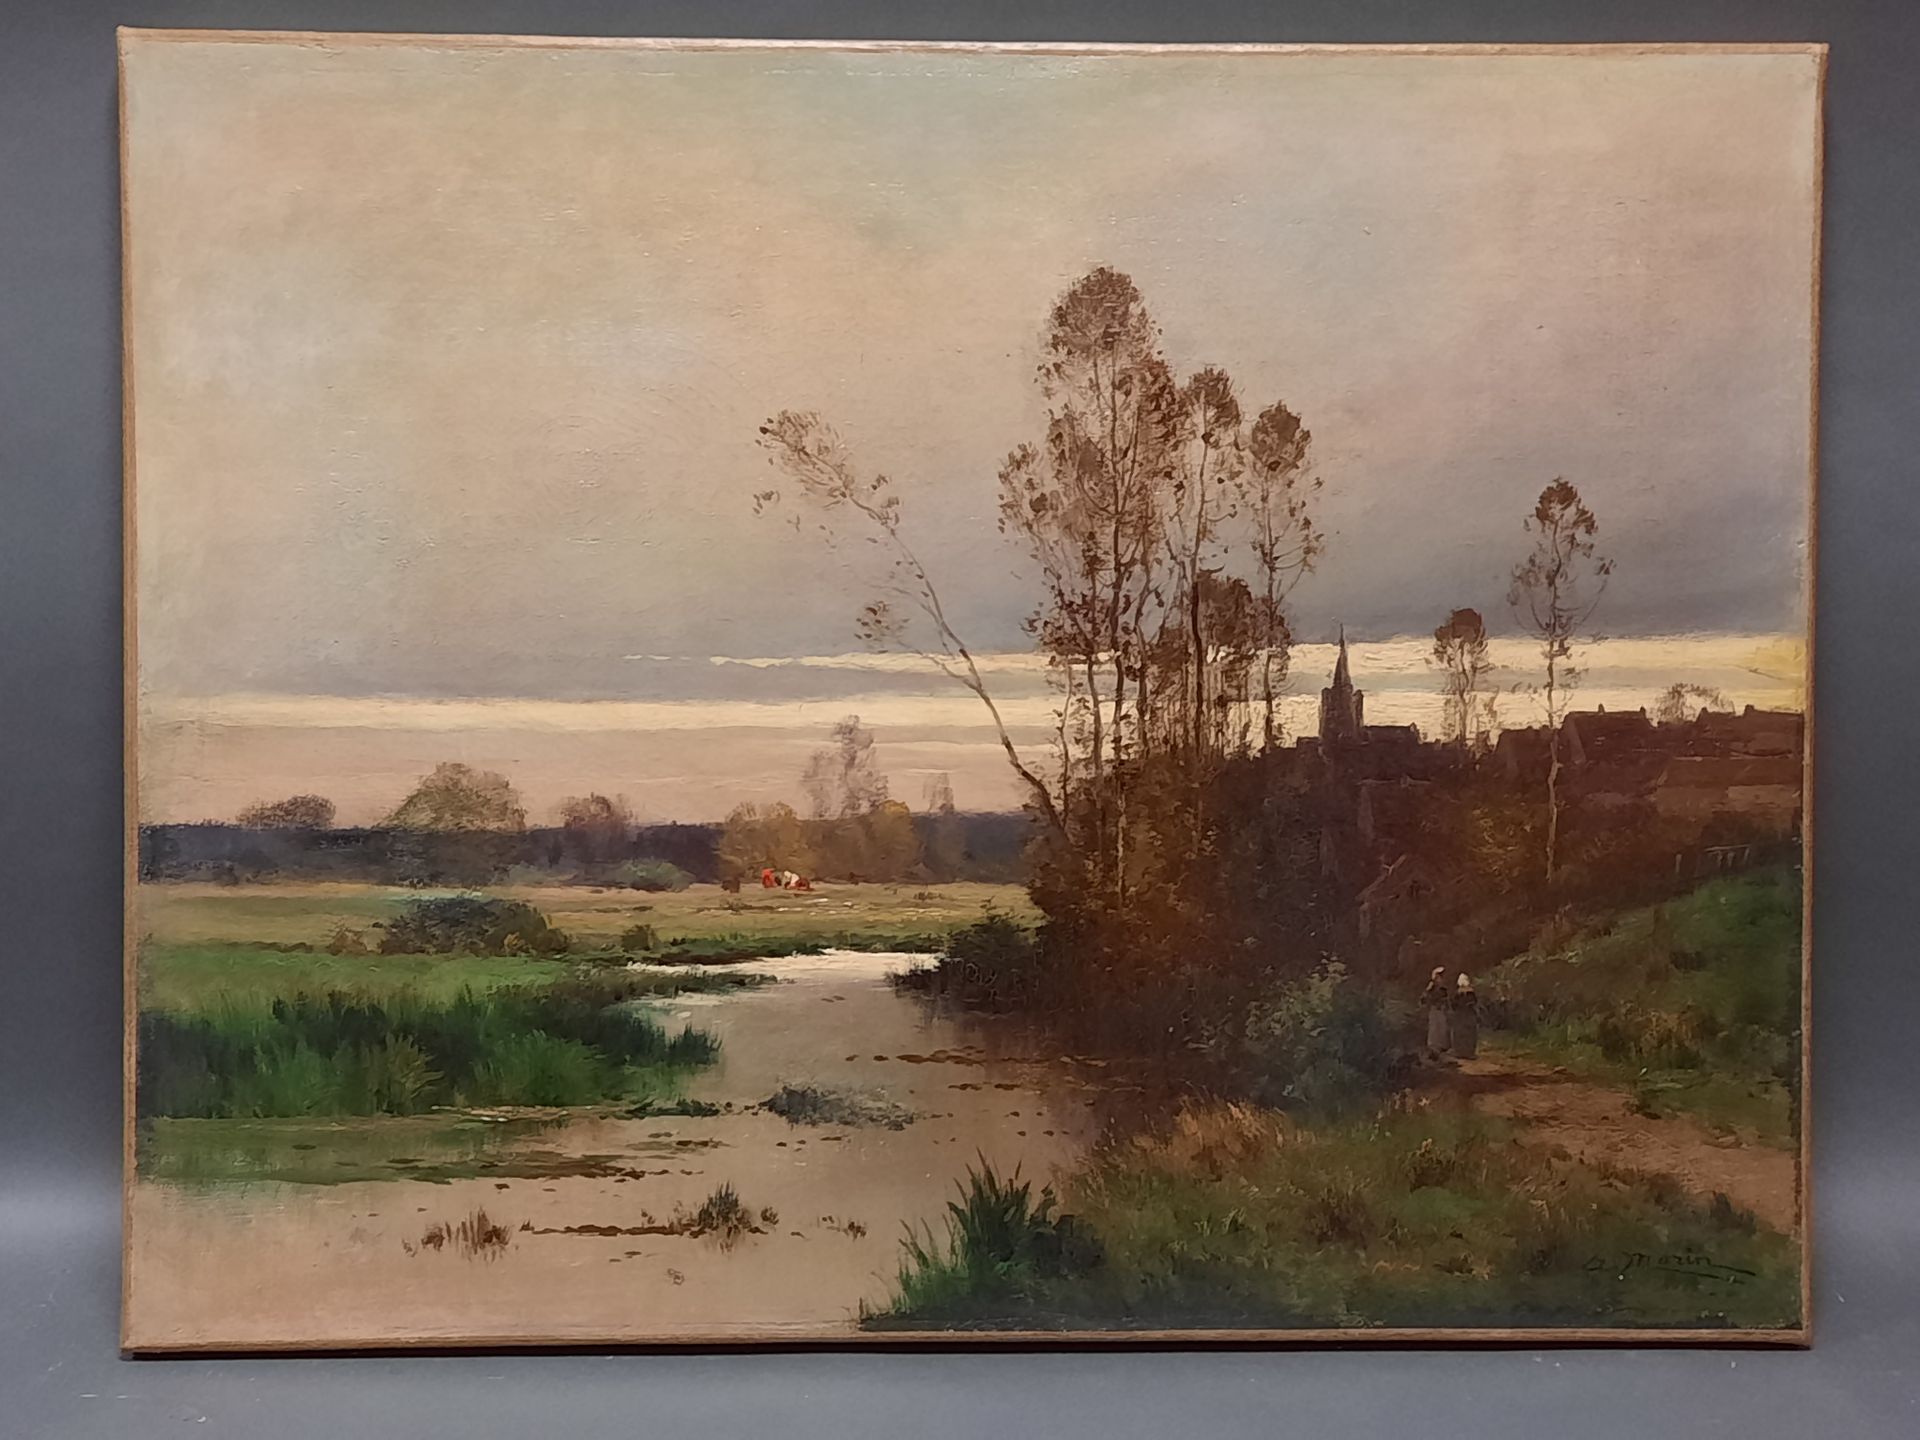 Null Adolphe MORIN (1841-circa 1880)

Dorf an einem Fluss

Öl auf Leinwand, unte&hellip;